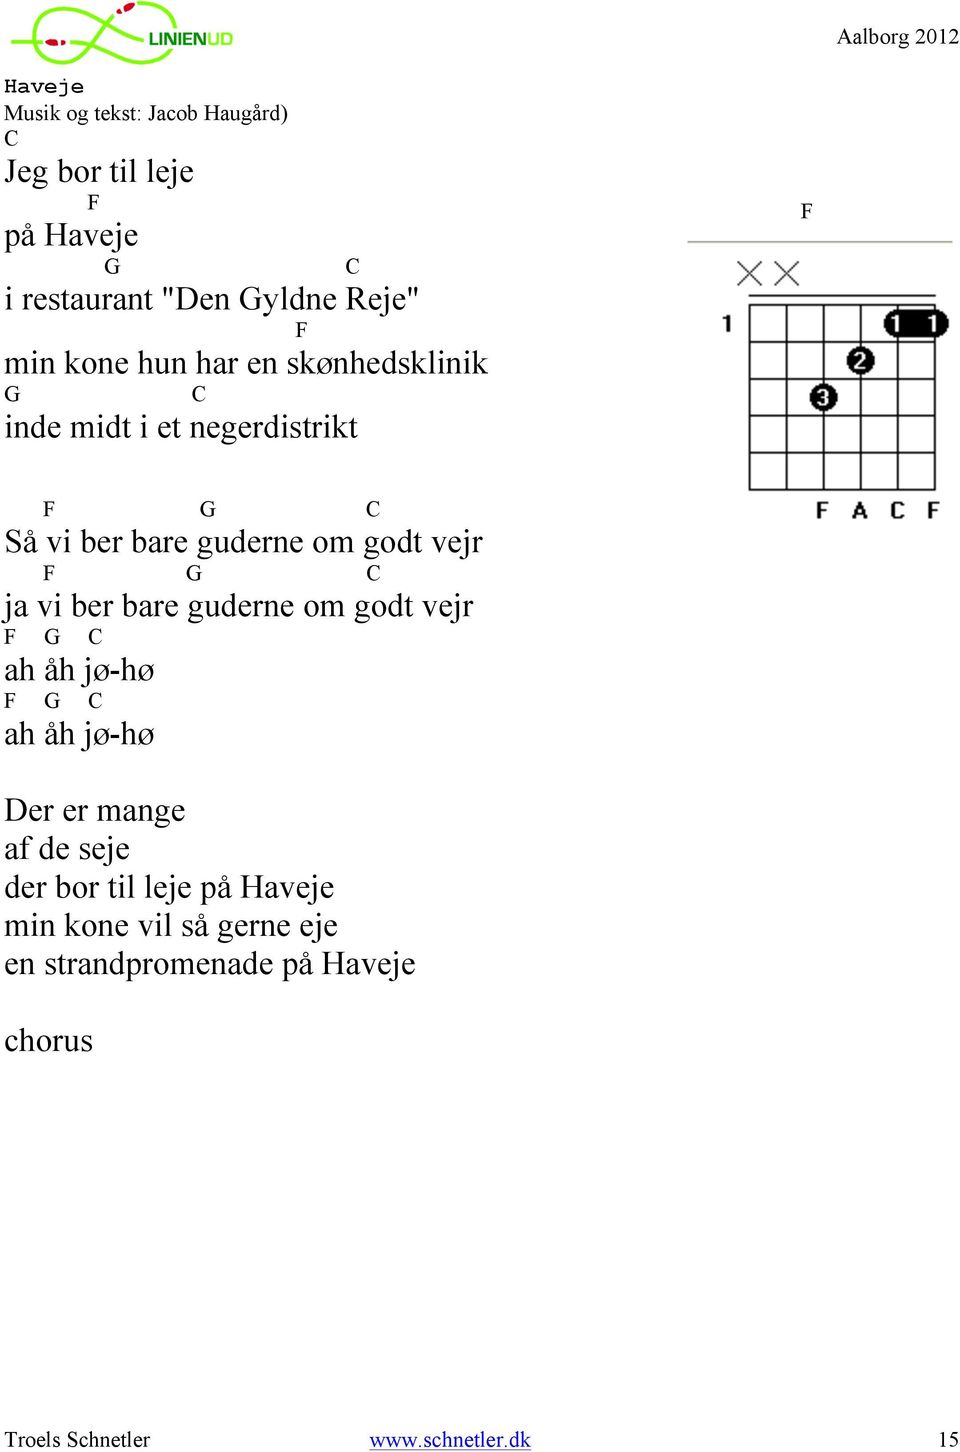 Linen ud, Aalborg. Guitarkursus. V/Troels Schnetler - PDF Gratis download